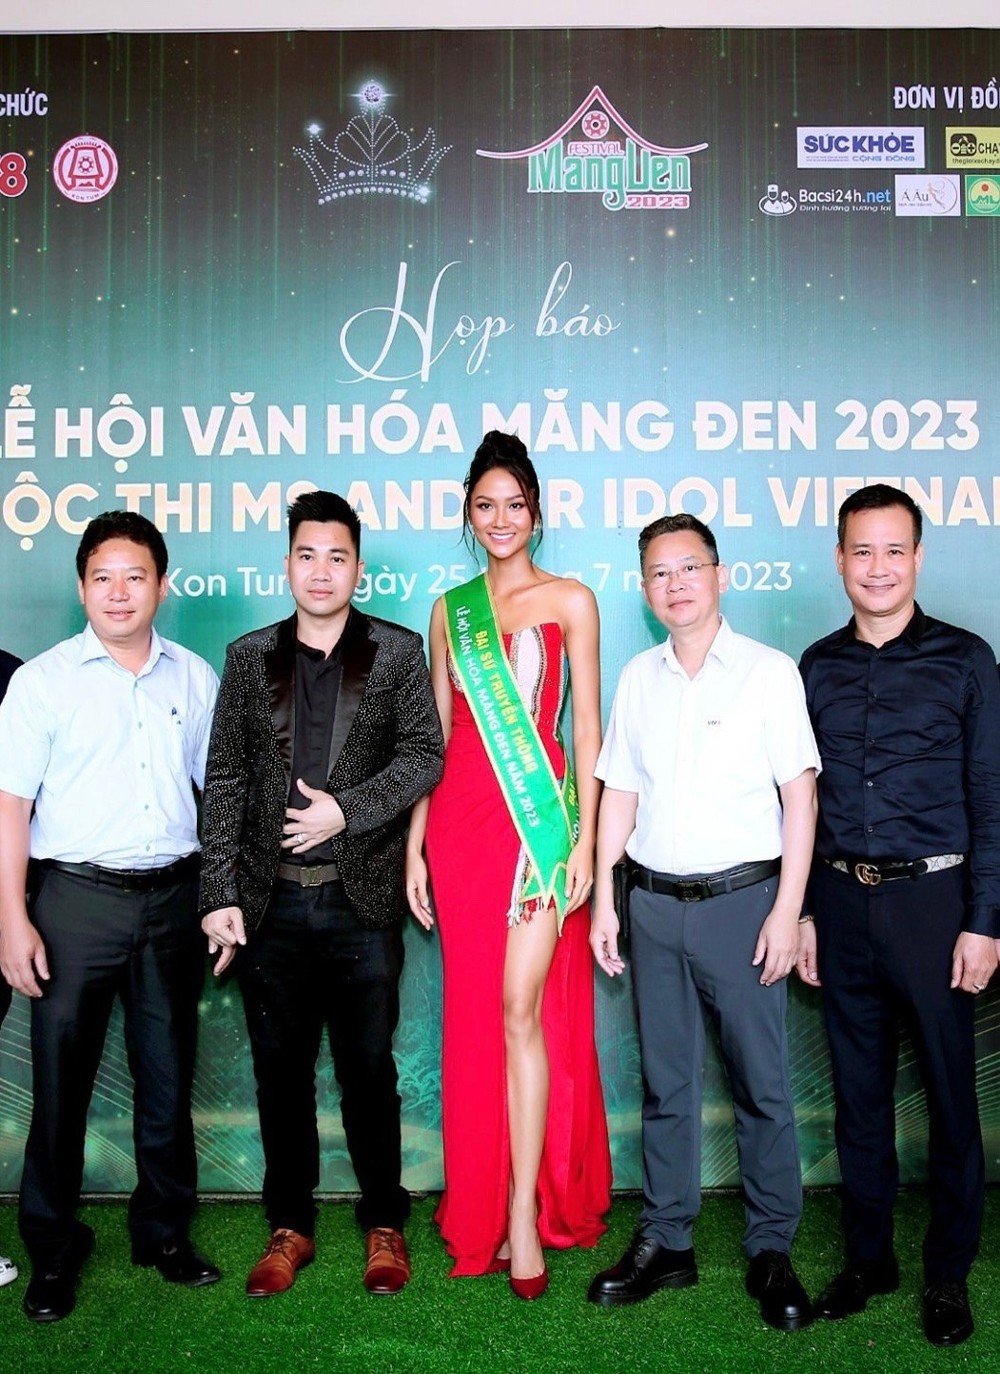 "Hoa hậu, nam vương thần tượng Việt Nam" đặc sắc trong "Lễ hội Văn hoá Măng Đen 2023" - 6